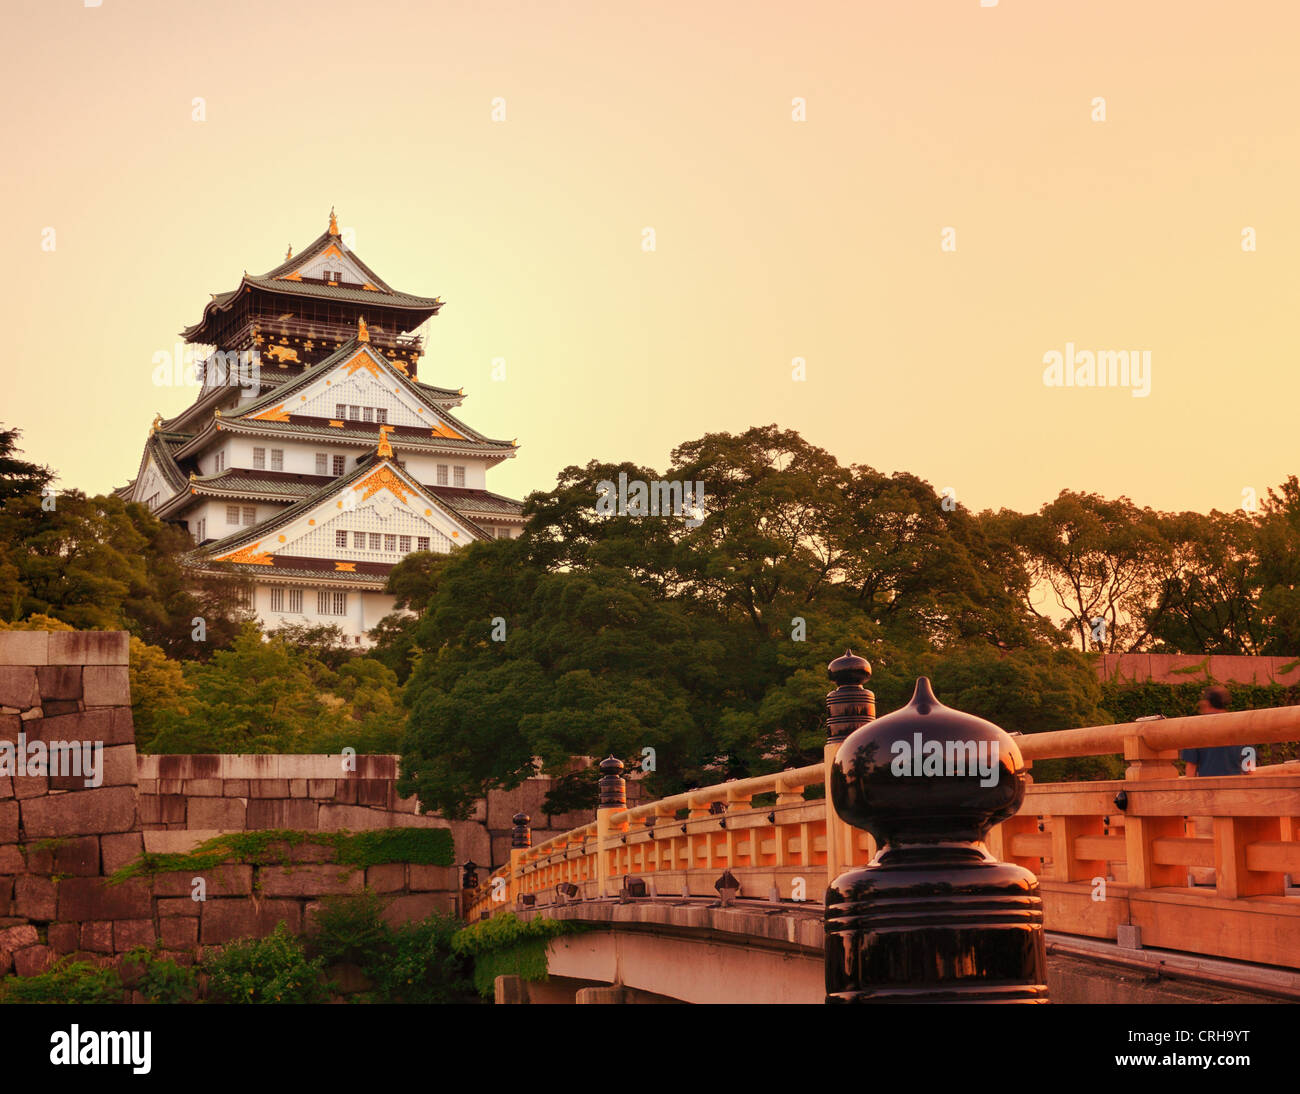 Osaka Castle in Osaka, Japan. Stock Photo